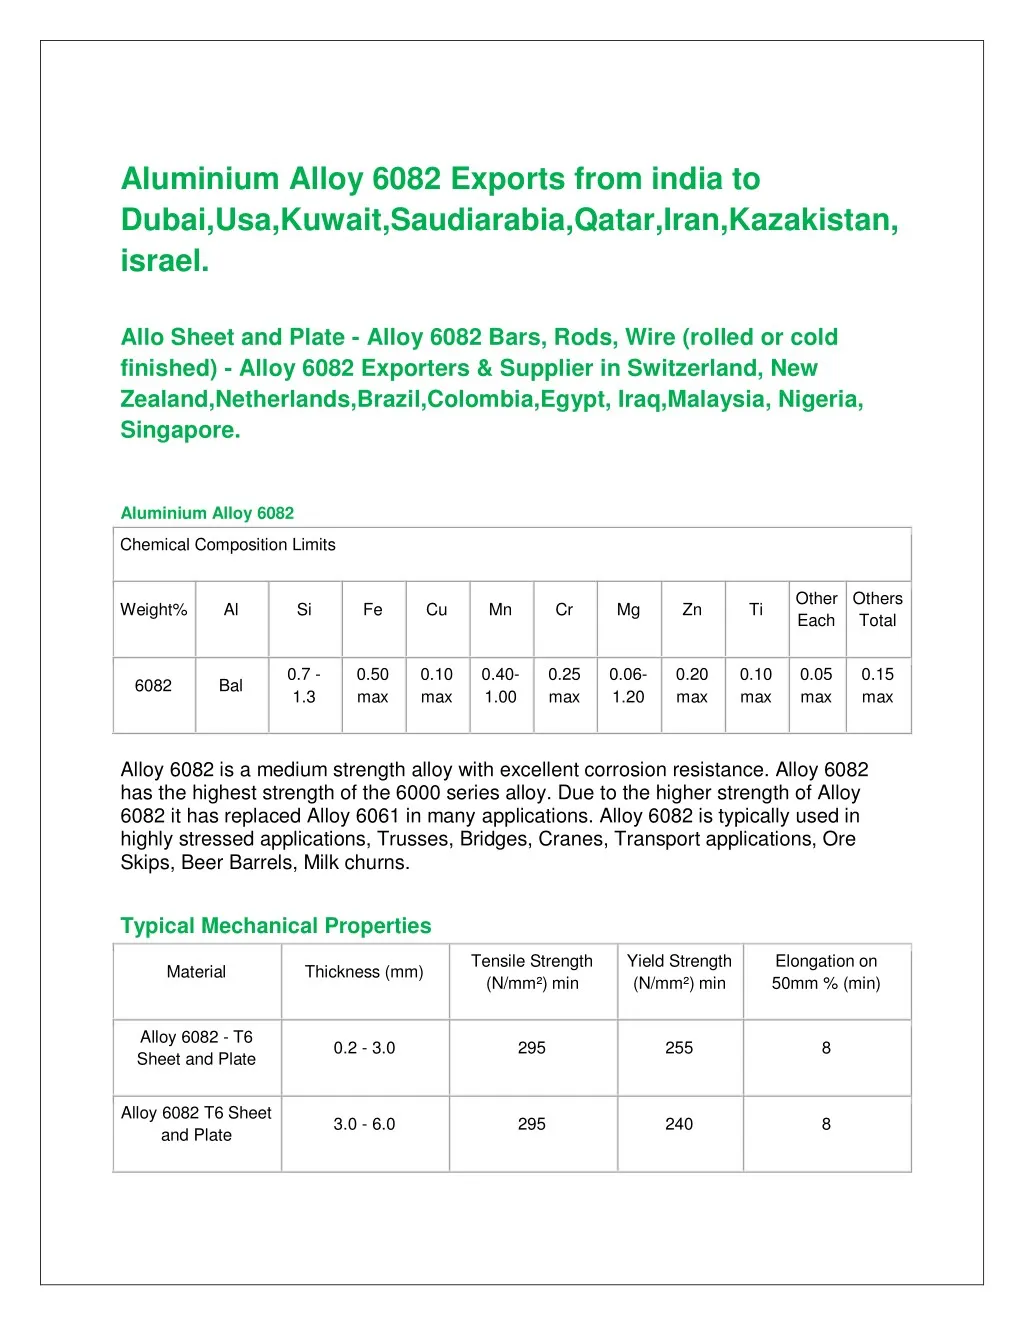 aluminium alloy 6082 exports from india to dubai